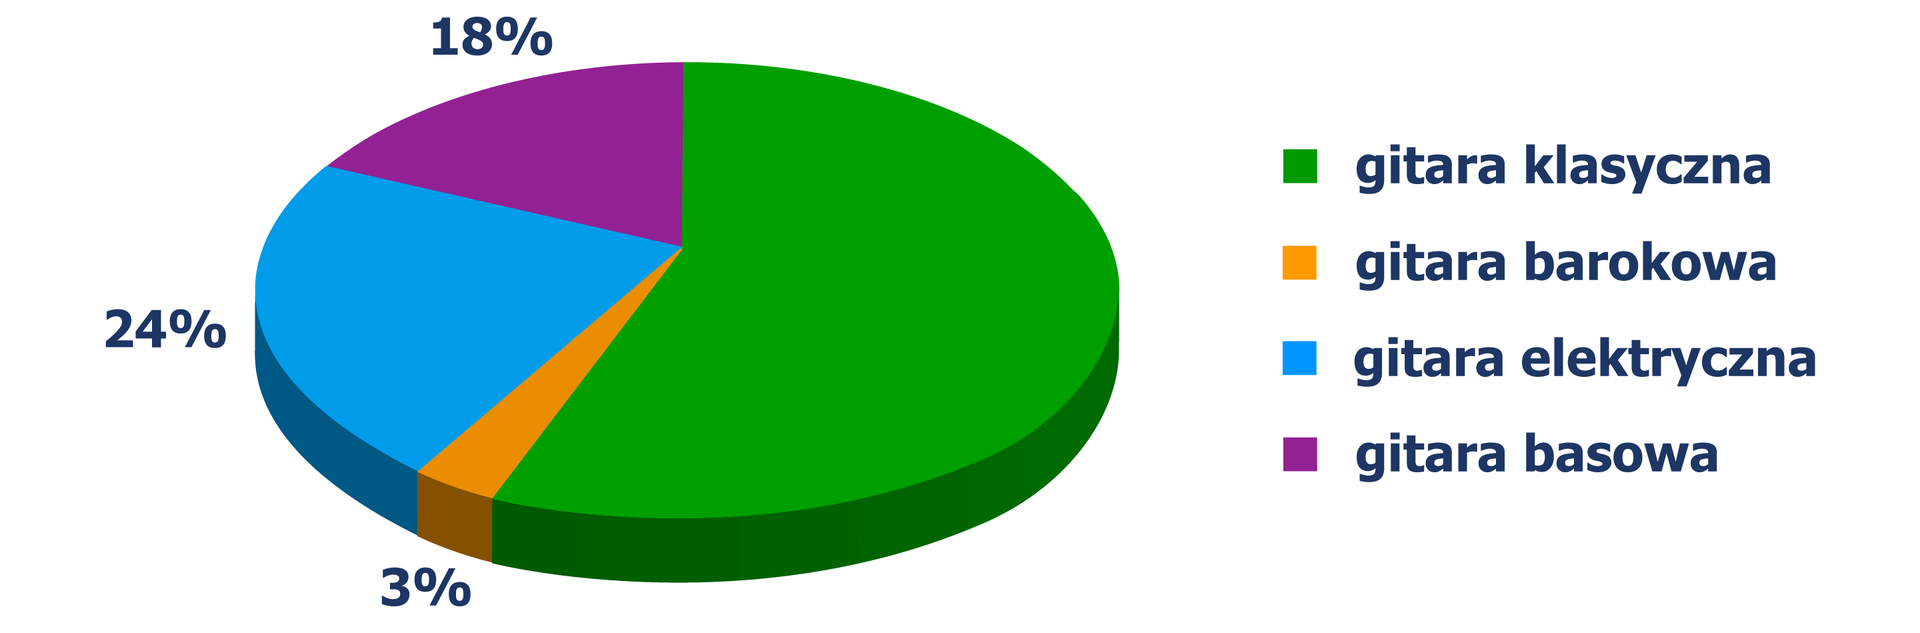 Diagram kołowy, z którego odczytujemy, jakie gitary wybrali studenci: gitara barokowa - 3%, gitara elektryczna - 24%, gitara basowa - 18%.